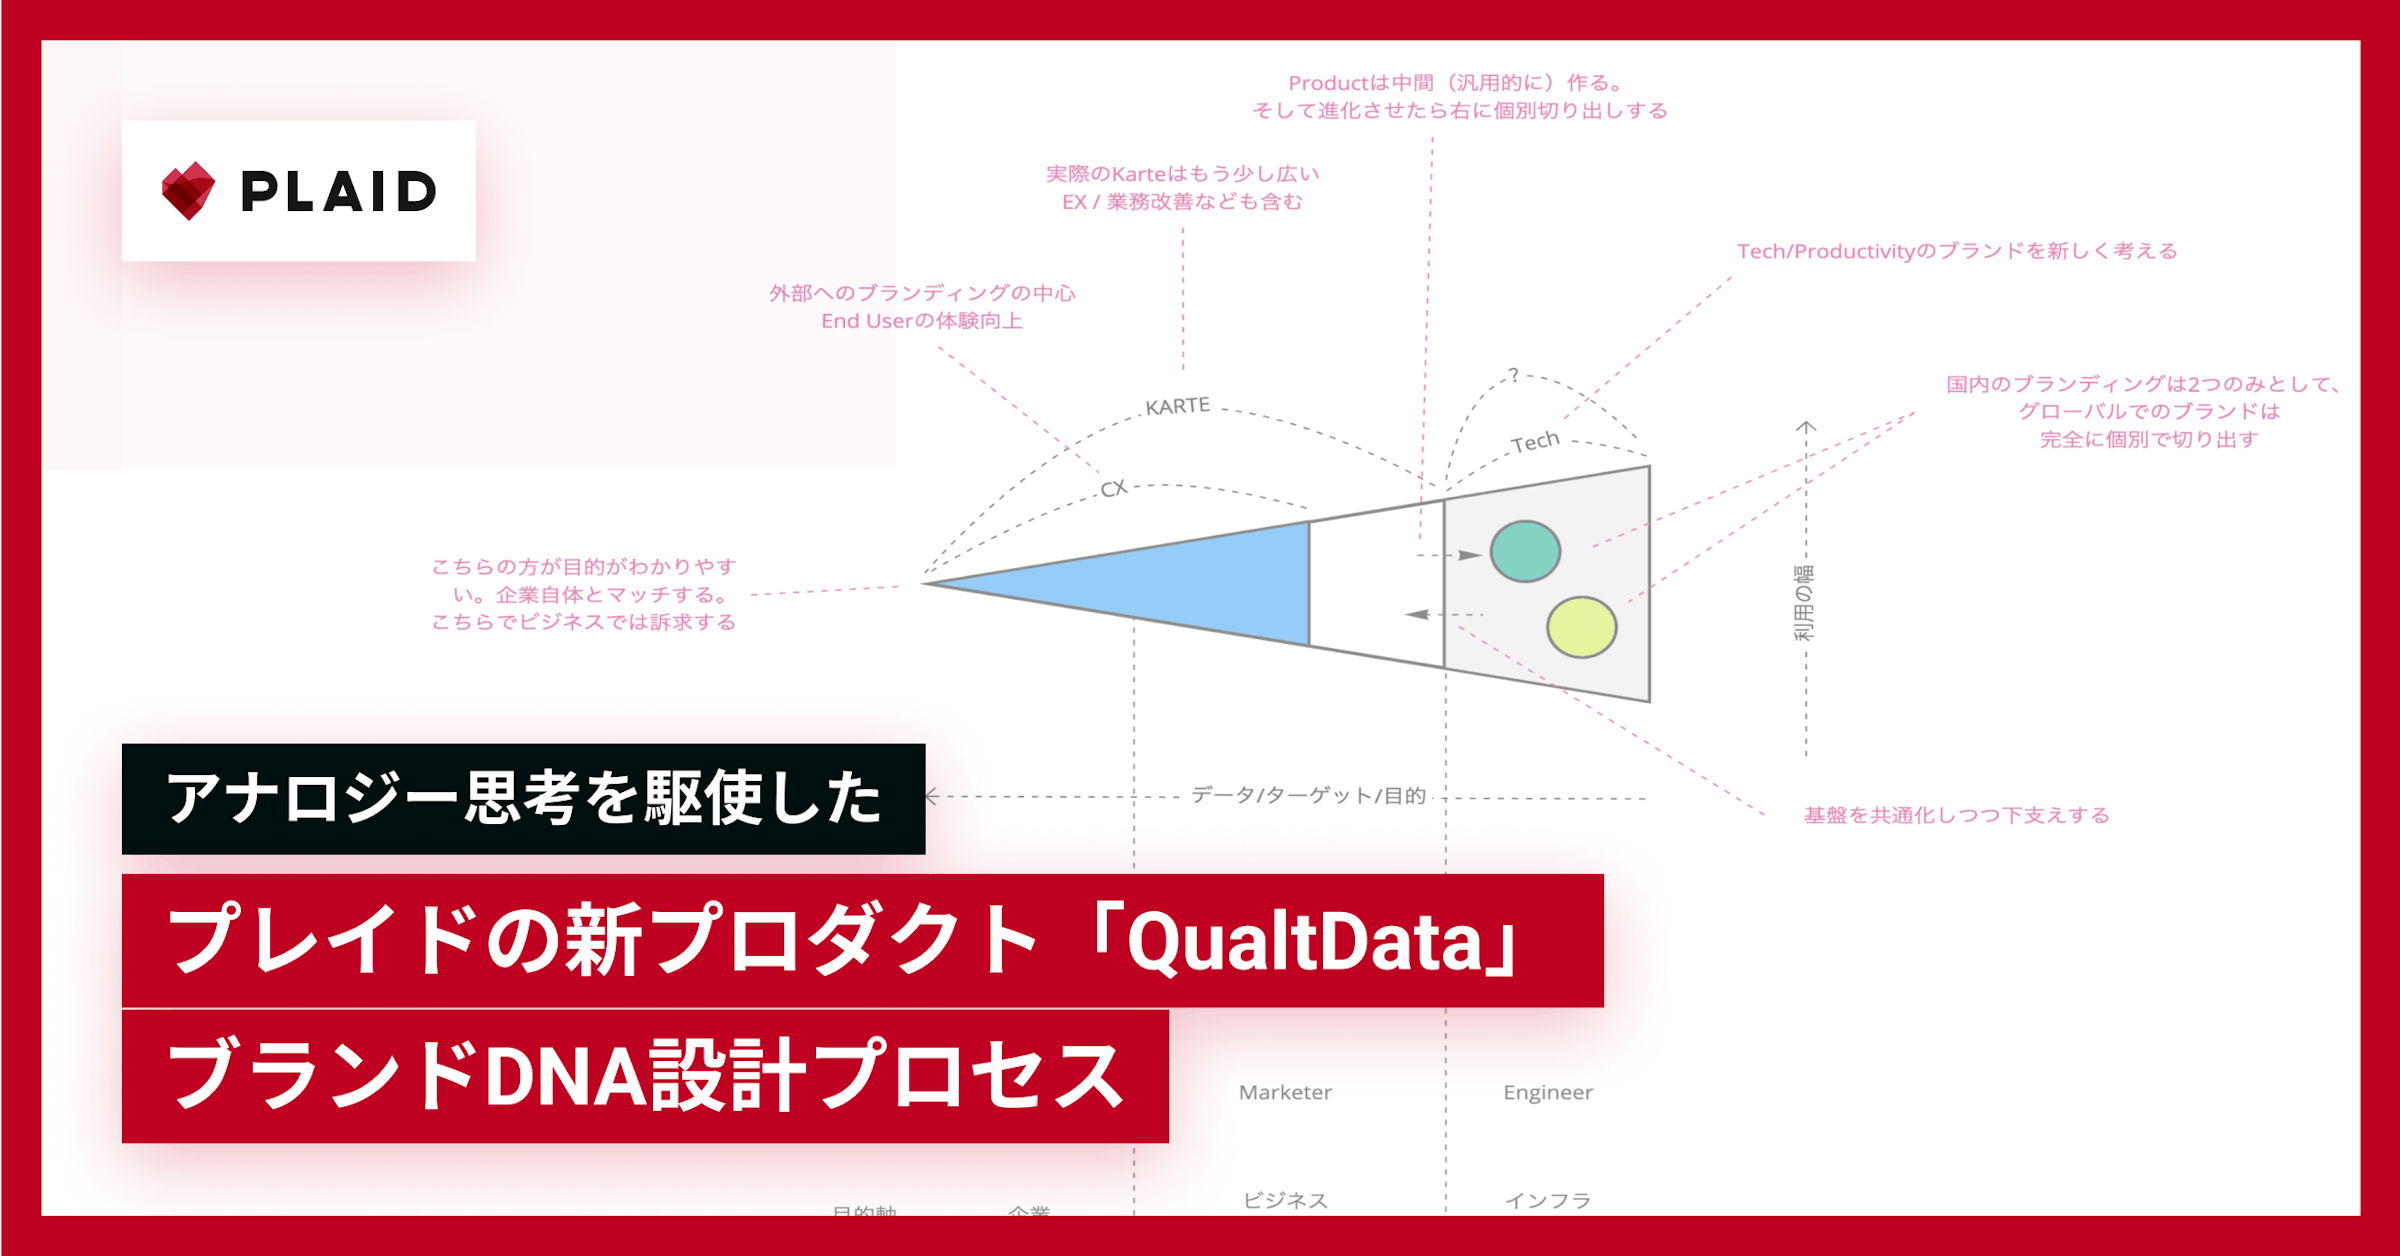 アナロジー思考を駆使したプレイドの新プロダクト「QualtData」ブランドDNA設計プロセス